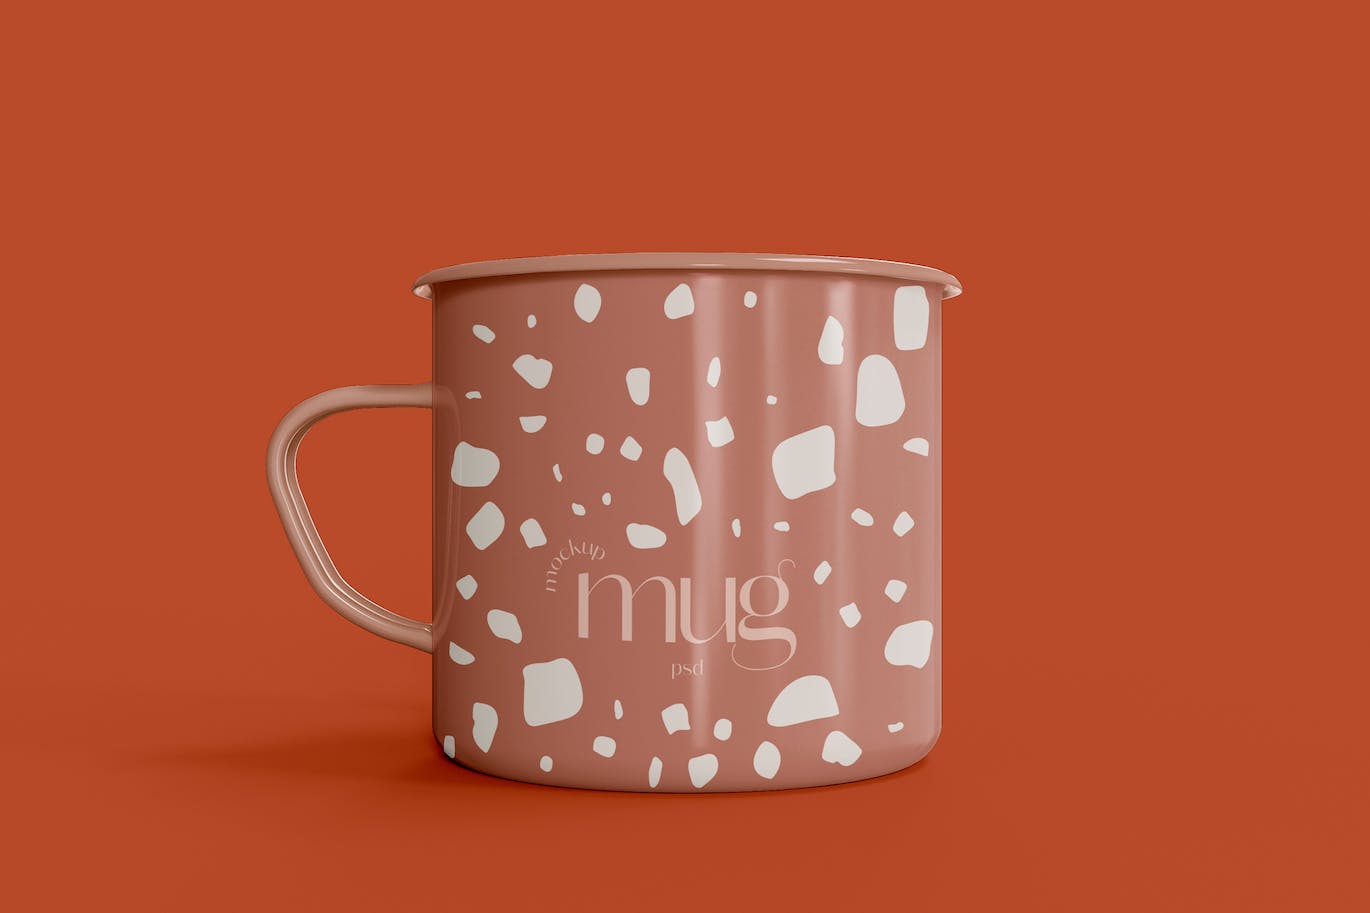 陶瓷咖啡马克杯杯身设计样机素材模板v1 Ceramic Mug Mockup